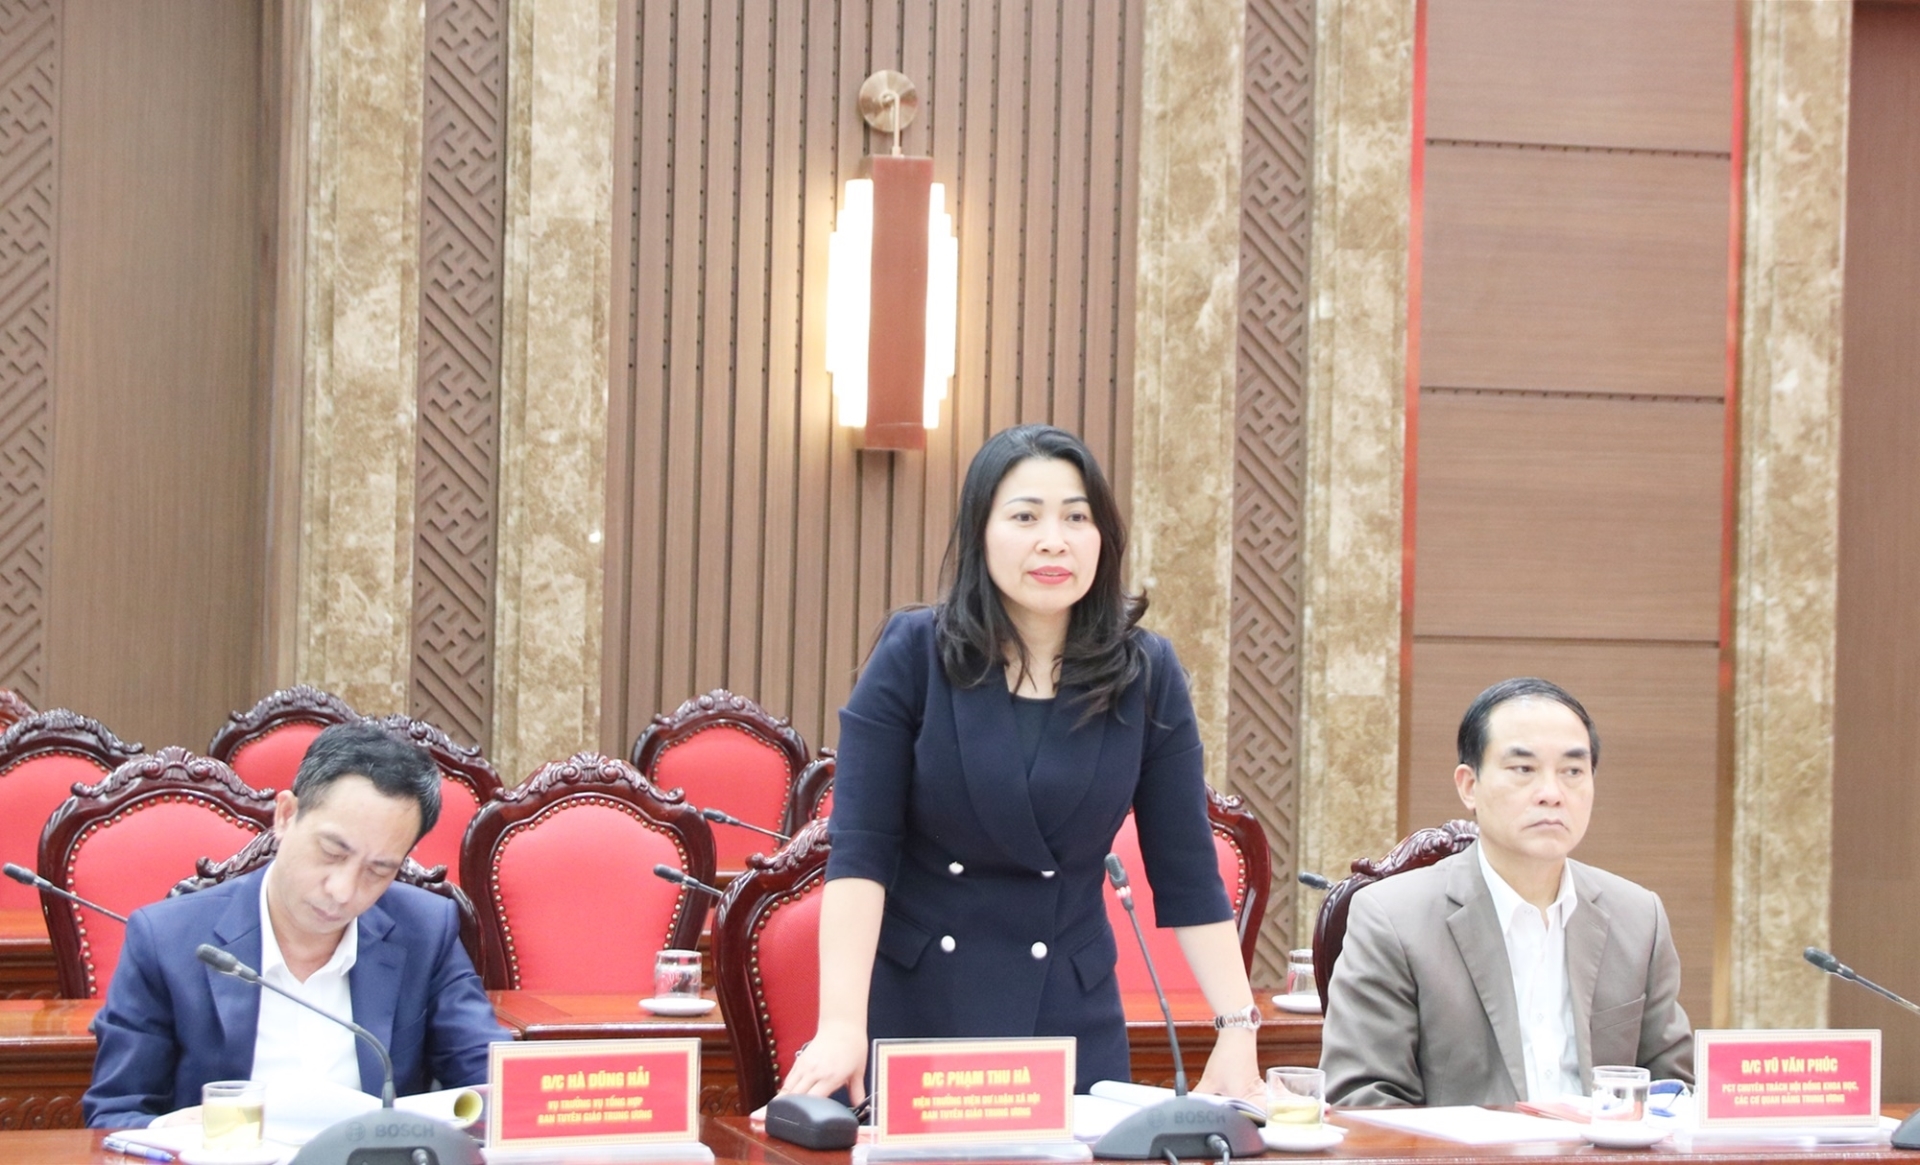 Đồng chí Phạm Thu Hà, Viện trưởng Viện Dư luận xã hội, Ban Tuyên giáo Trung ương phát biểu tại buổi làm việc.